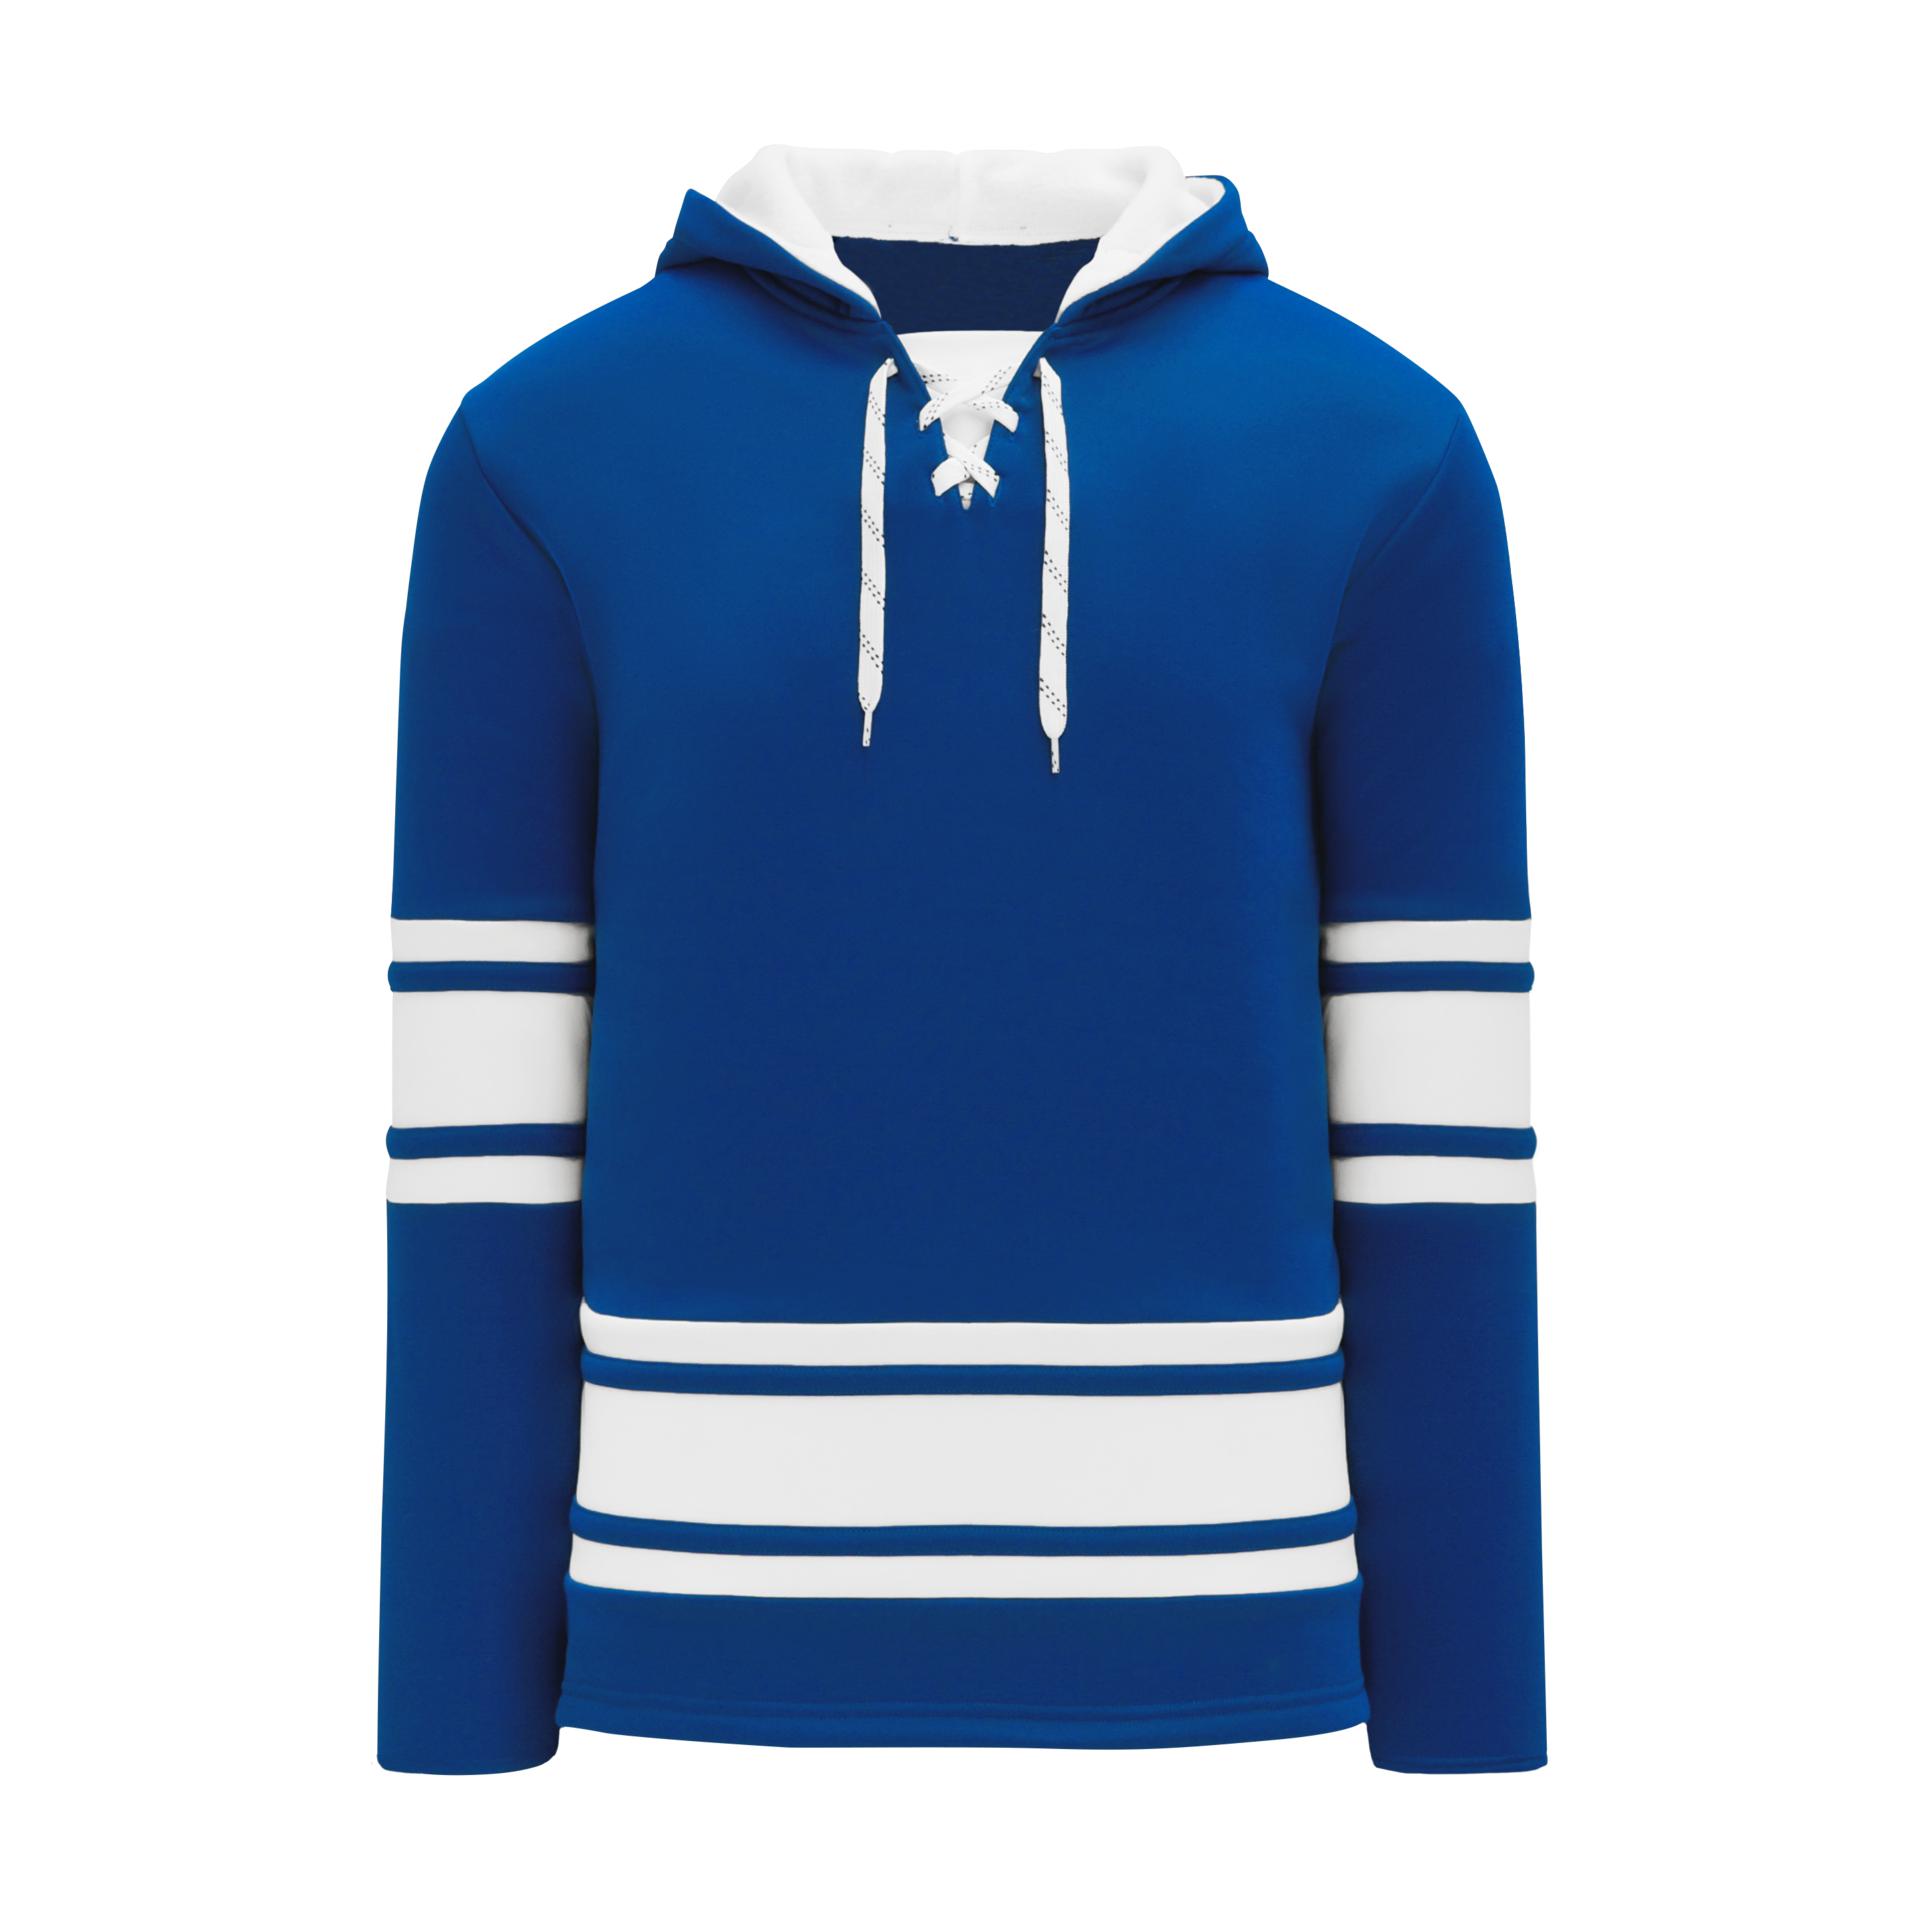 Toronto Maple Leafs Gear, Jerseys, Store, Pro Shop, Hockey Apparel